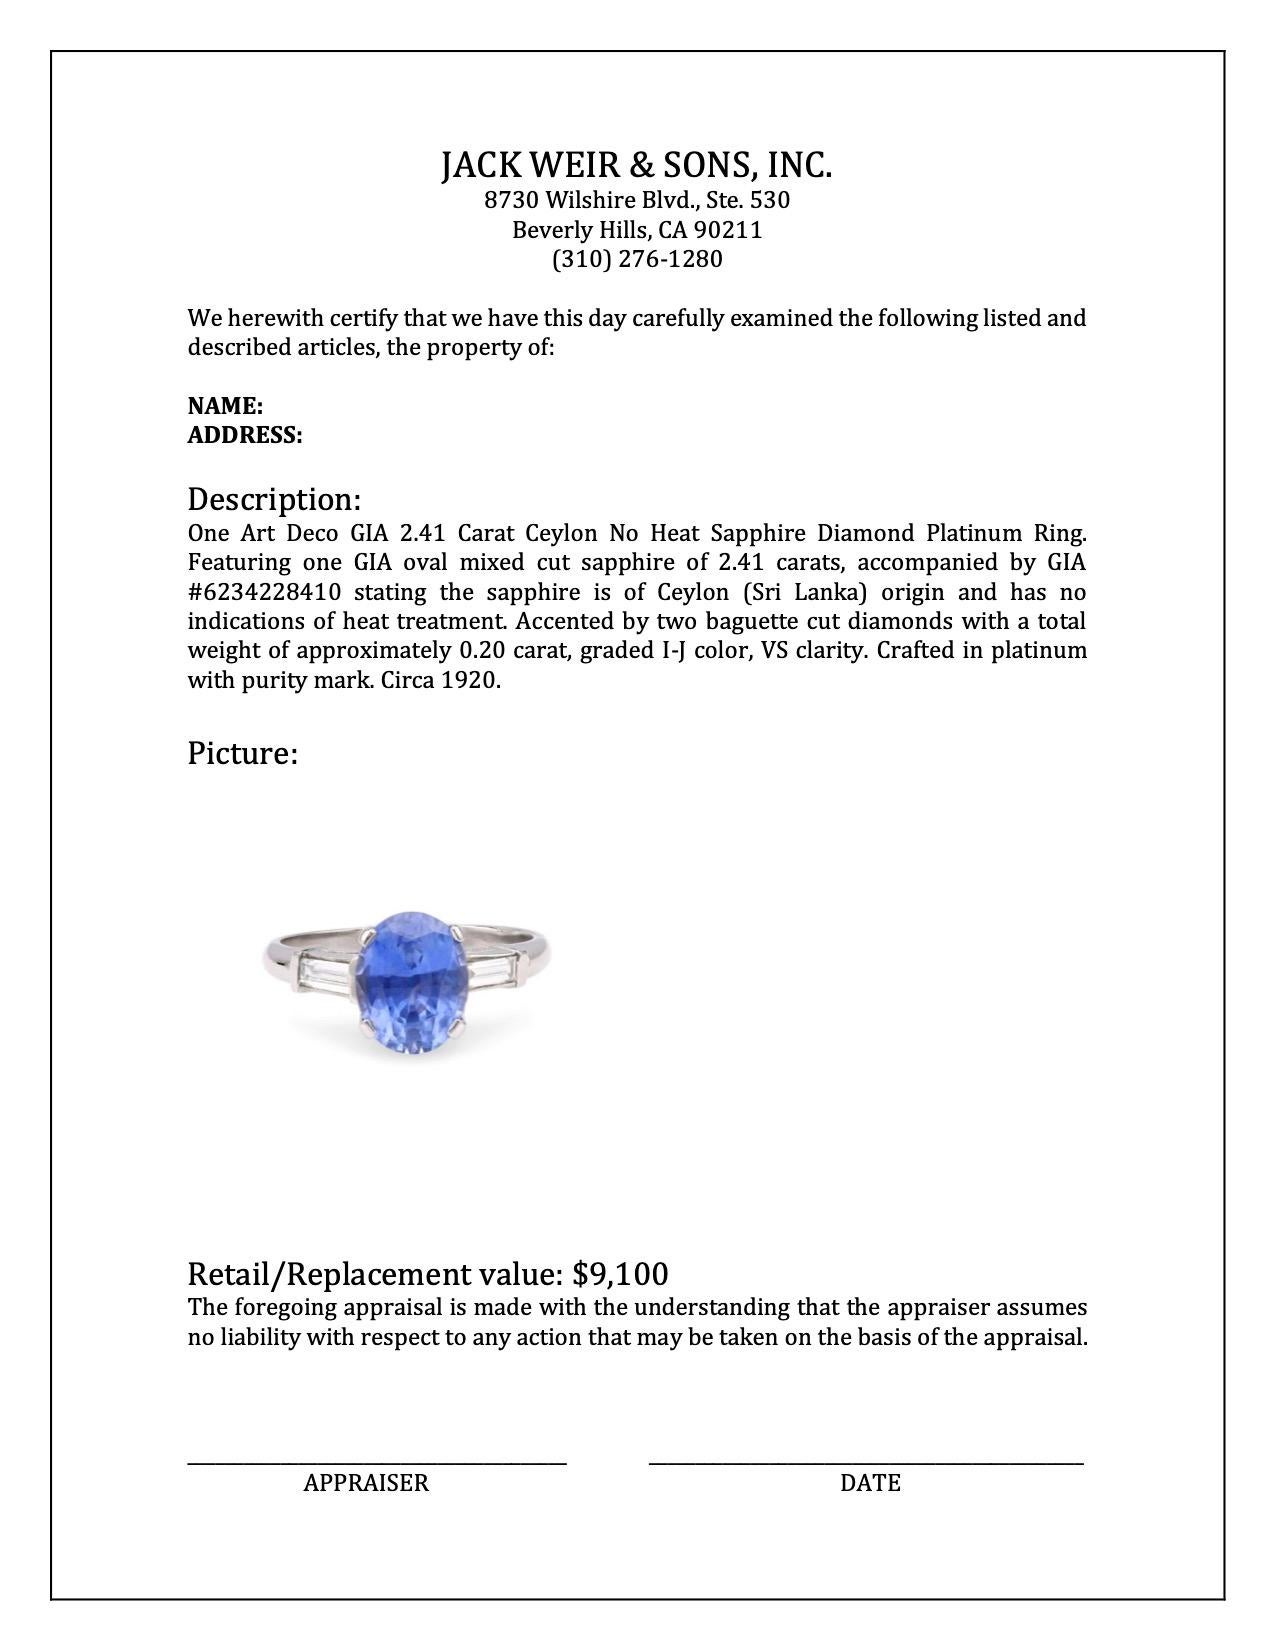 Bague Art déco avec saphir de Ceylan non chauffé de 2,41 carats certifié GIA et diamants en vente 1